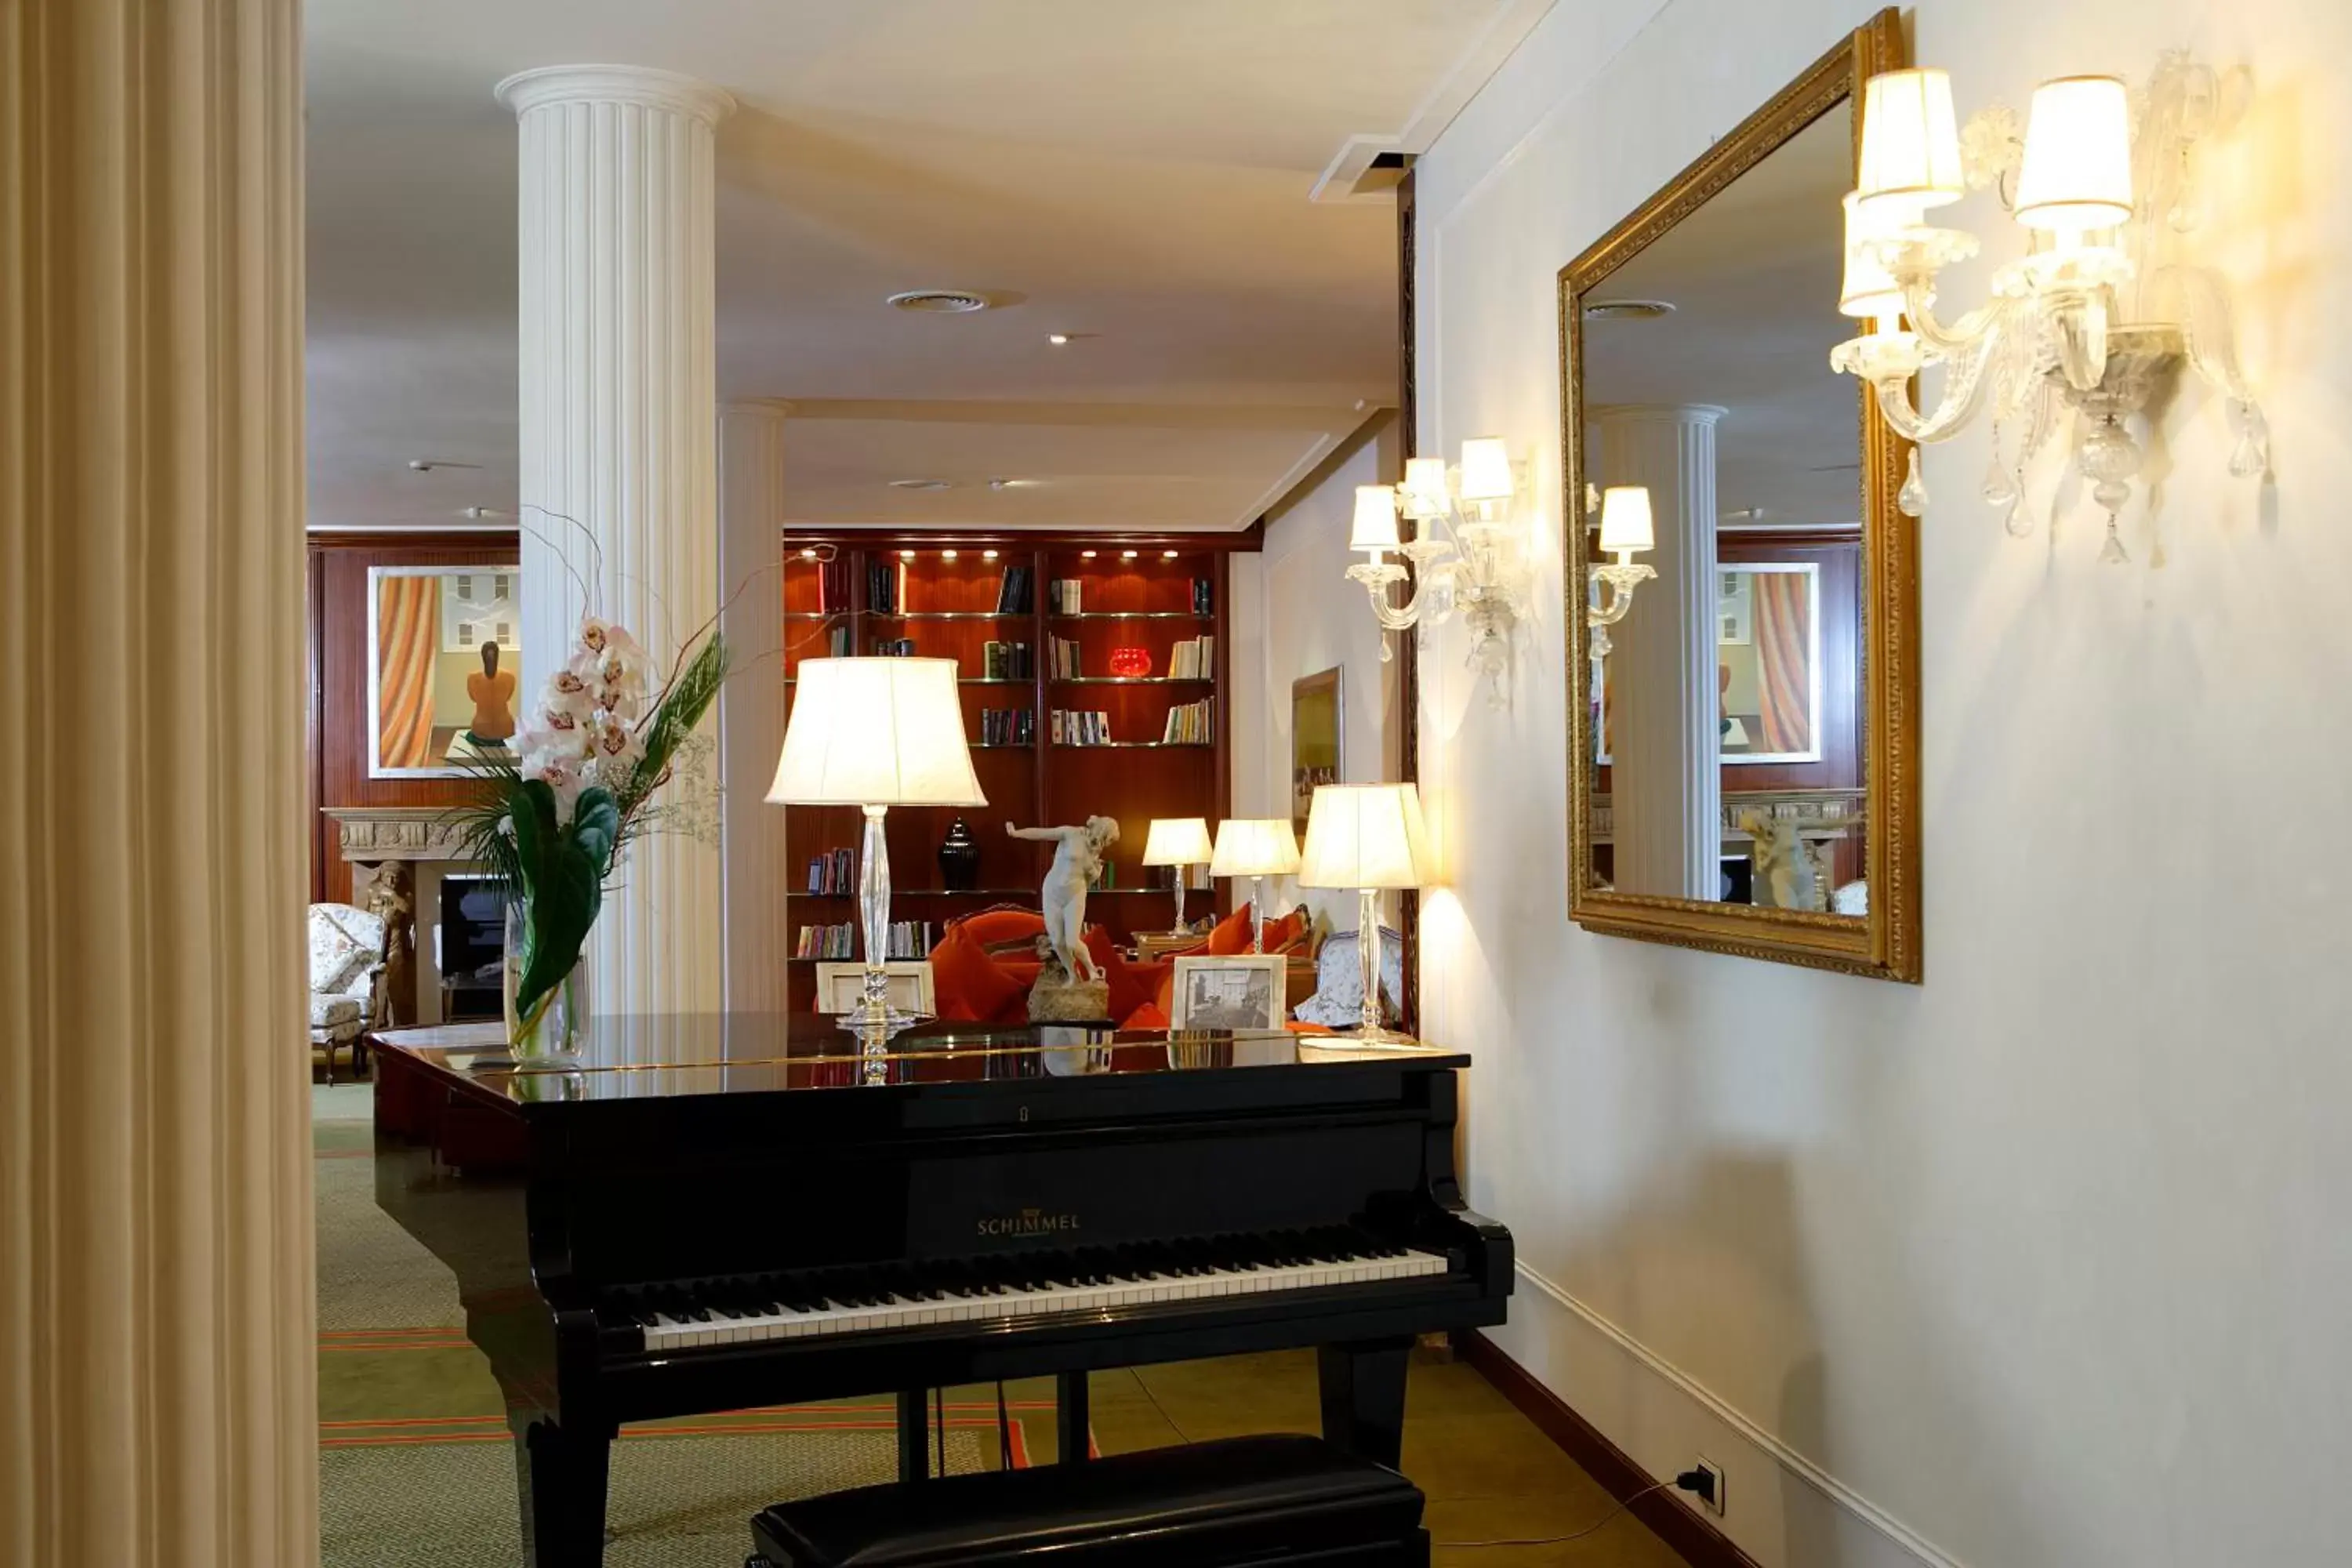 Lobby or reception in Hotel De La Ville